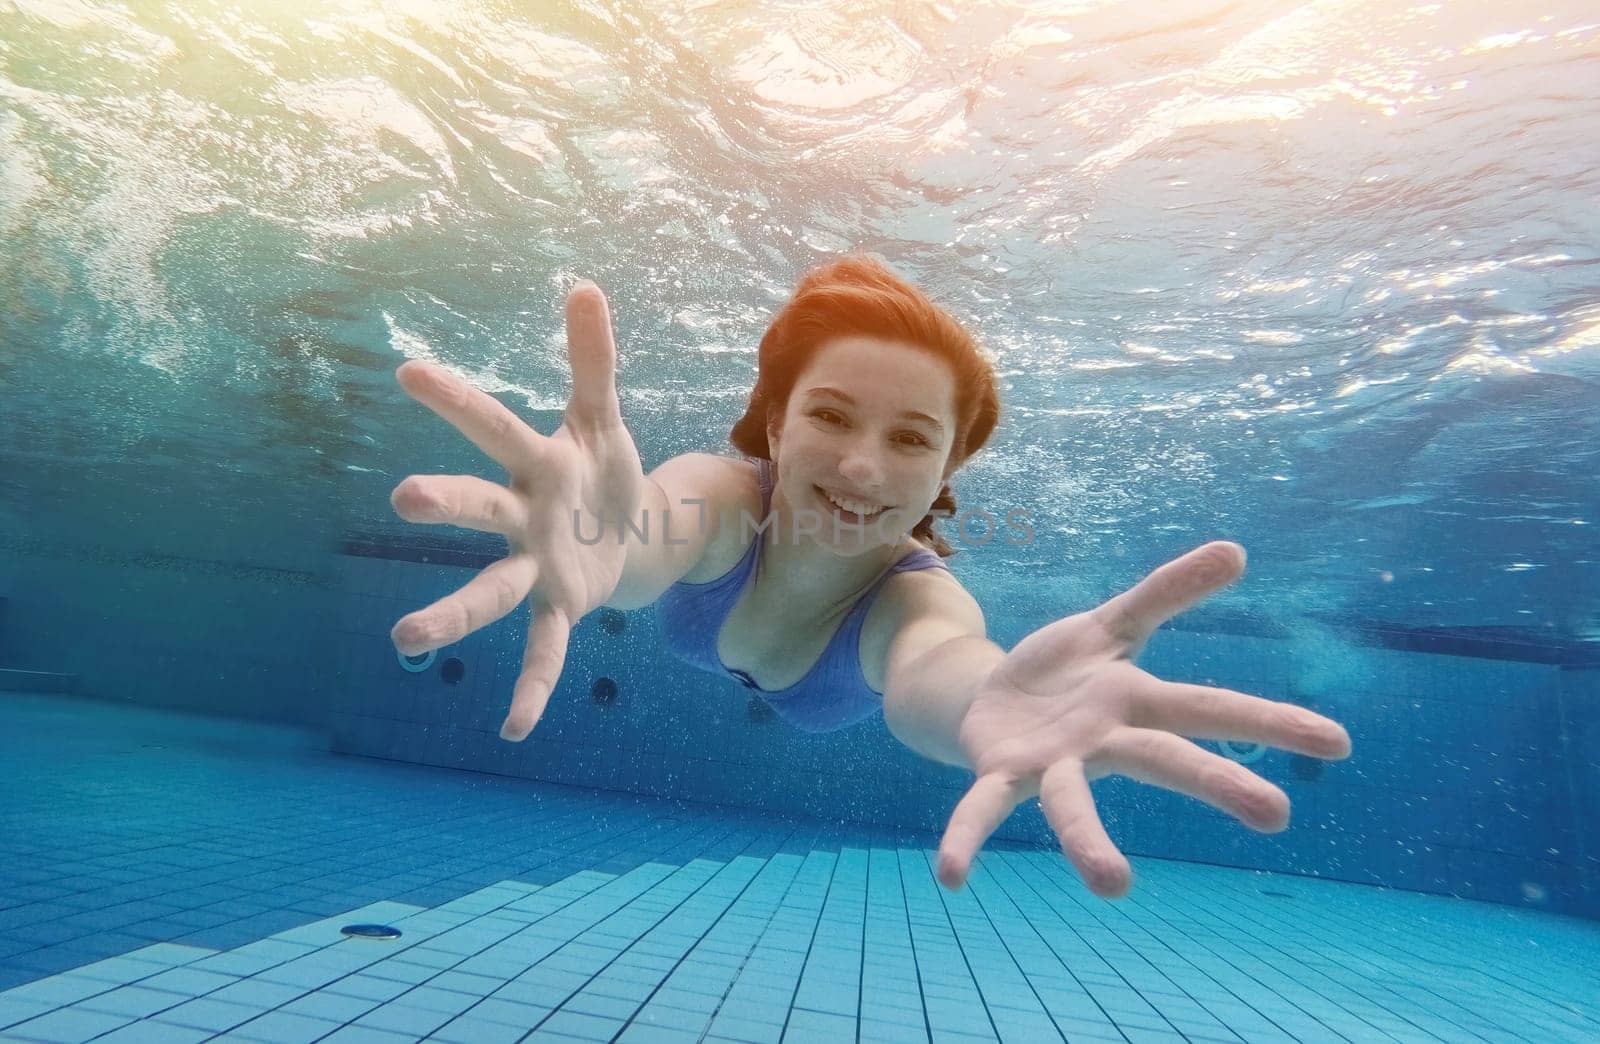 Teen girl swimming under water in blue pool by GekaSkr